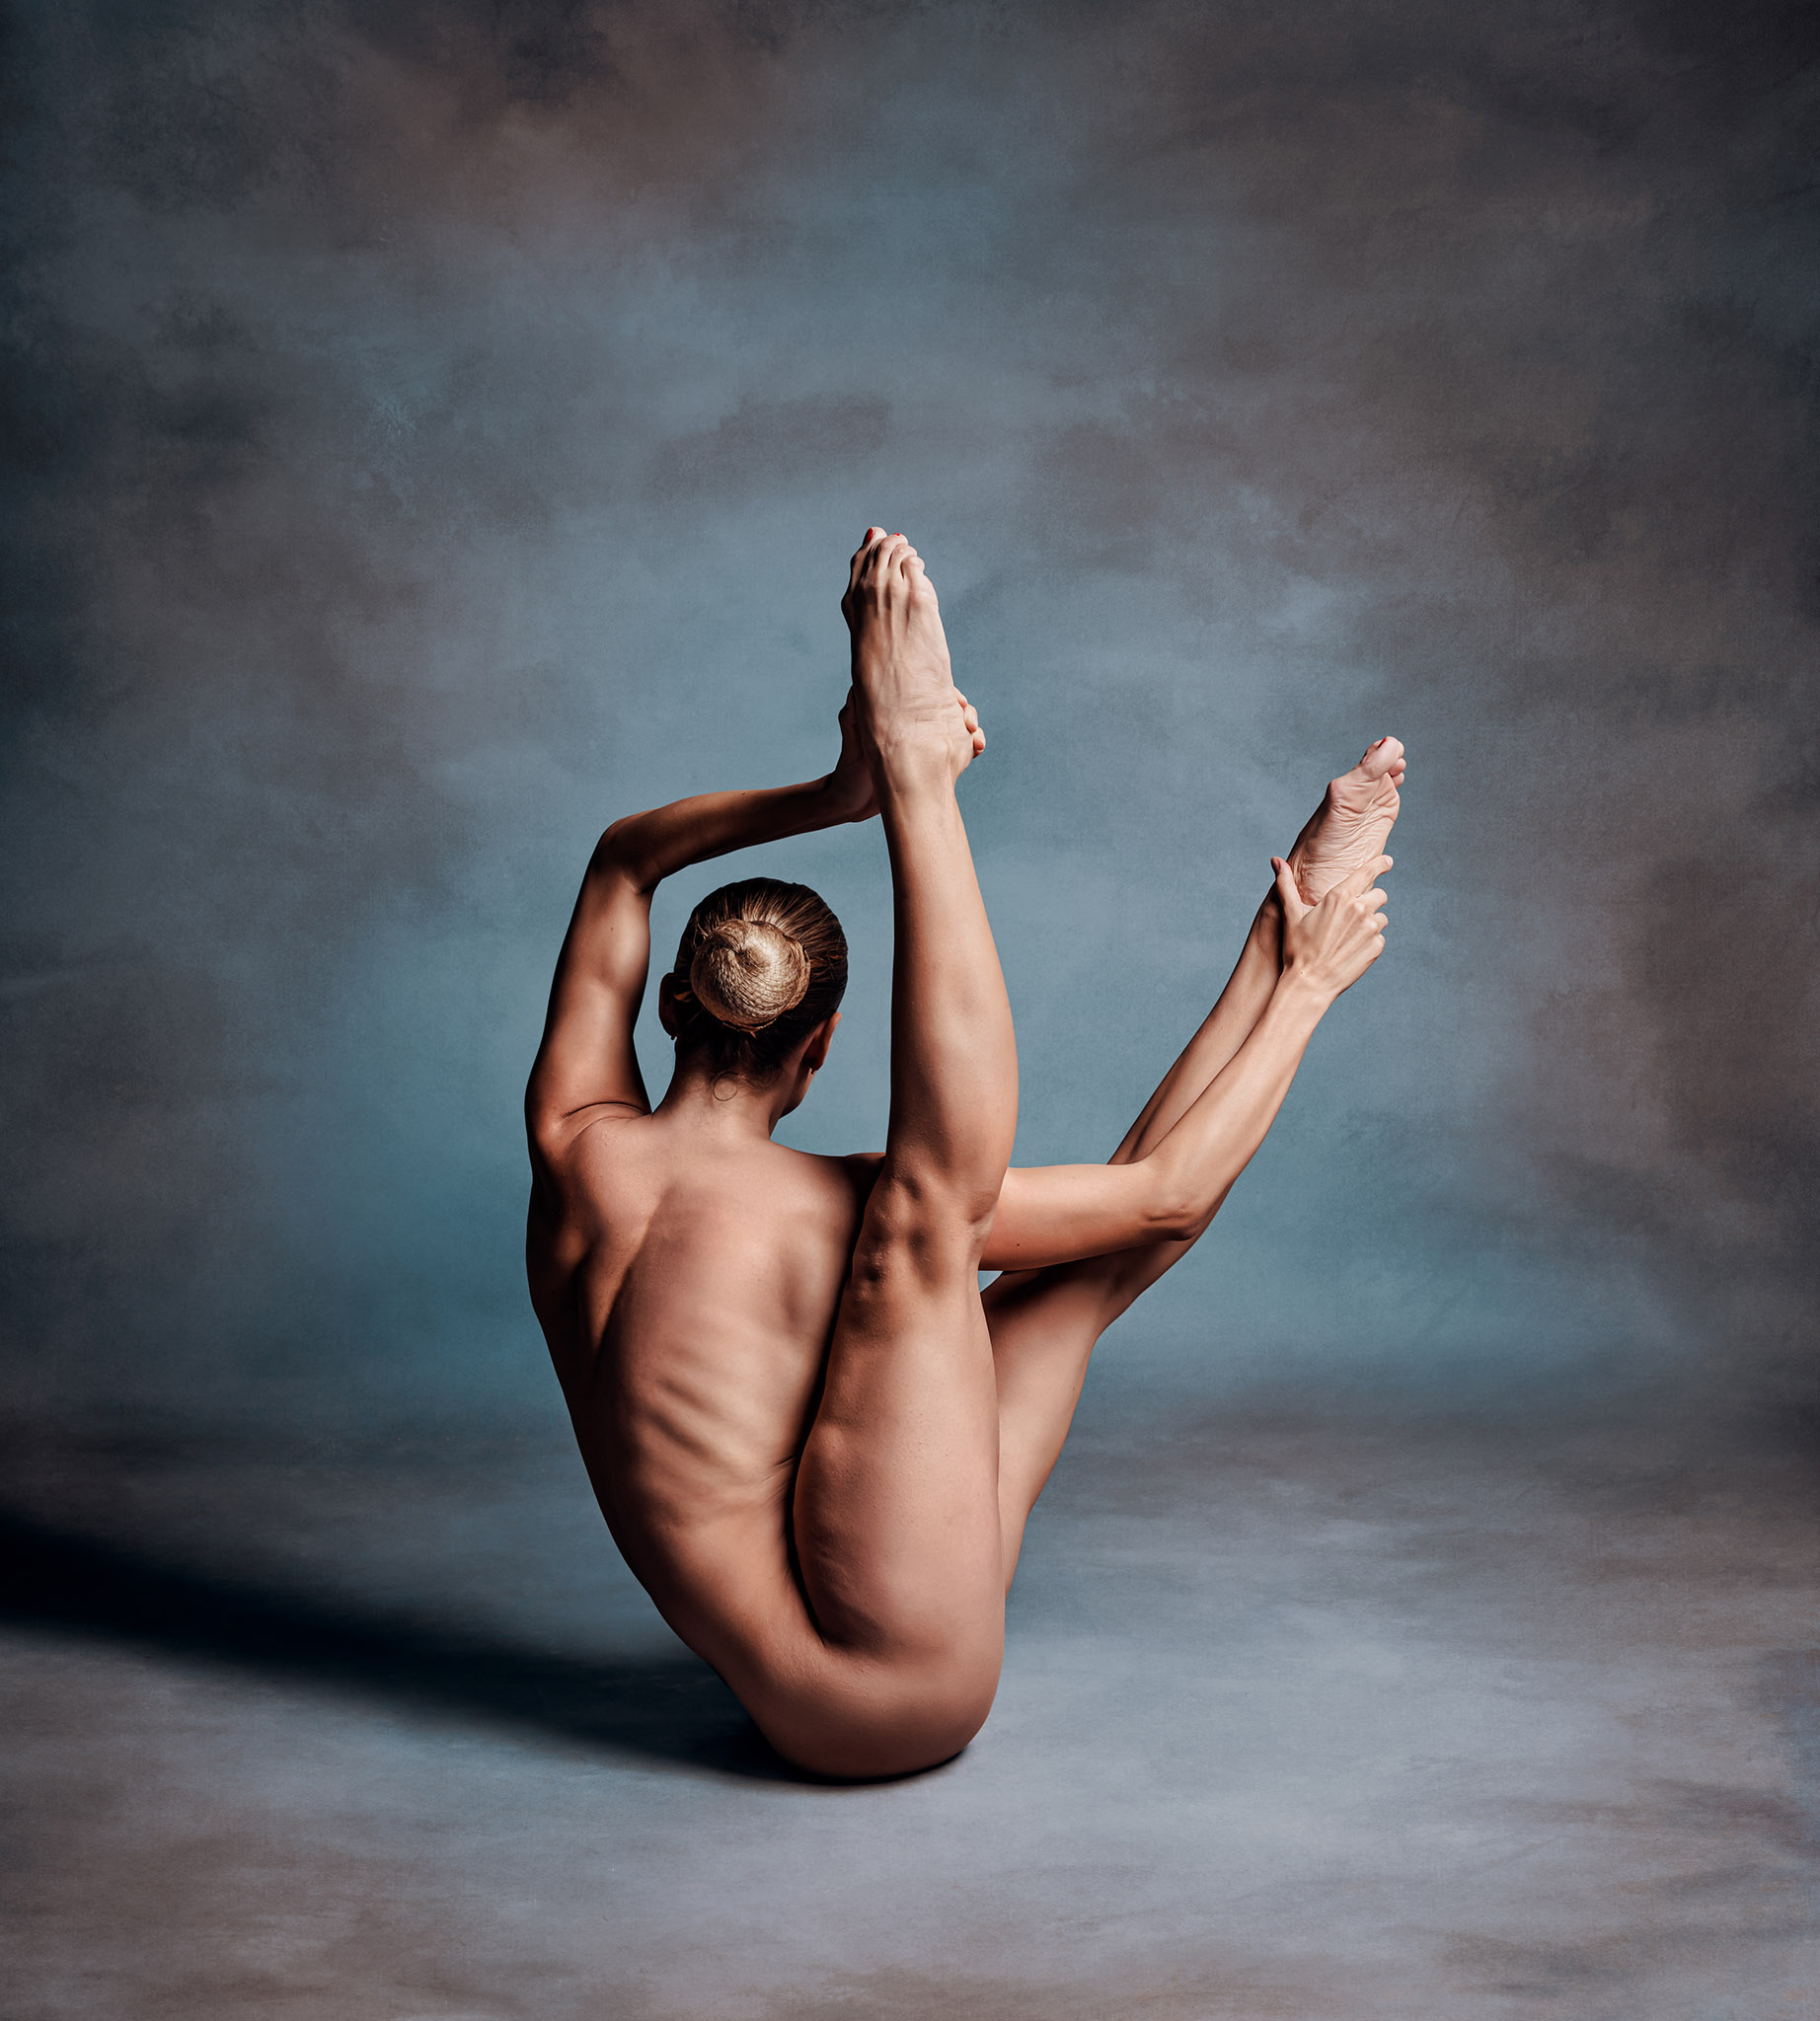 La fotografía de desnudo con poses de yoga es una forma de arte que celebra la belleza del cuerpo humano y la capacidad de este para realizar posturas de yoga. Al combinar esto con las posturas de yoga, se puede crear una imagen impresionante que celebra la conexión entre el cuerpo y la mente. Esta forma de fotografía no es pornografía, sino una forma de arte que puede ser utilizada para explorar la belleza y la armonía del cuerpo humano en su forma más natural. Además, la práctica del yoga ayuda a mejorar la postura y la flexibilidad, lo cual puede ser visualmente representado en la fotografía. La fotografía de desnudo con poses de yoga también puede ser utilizada para inspirar a otros a practicar yoga y mejorar su vida.